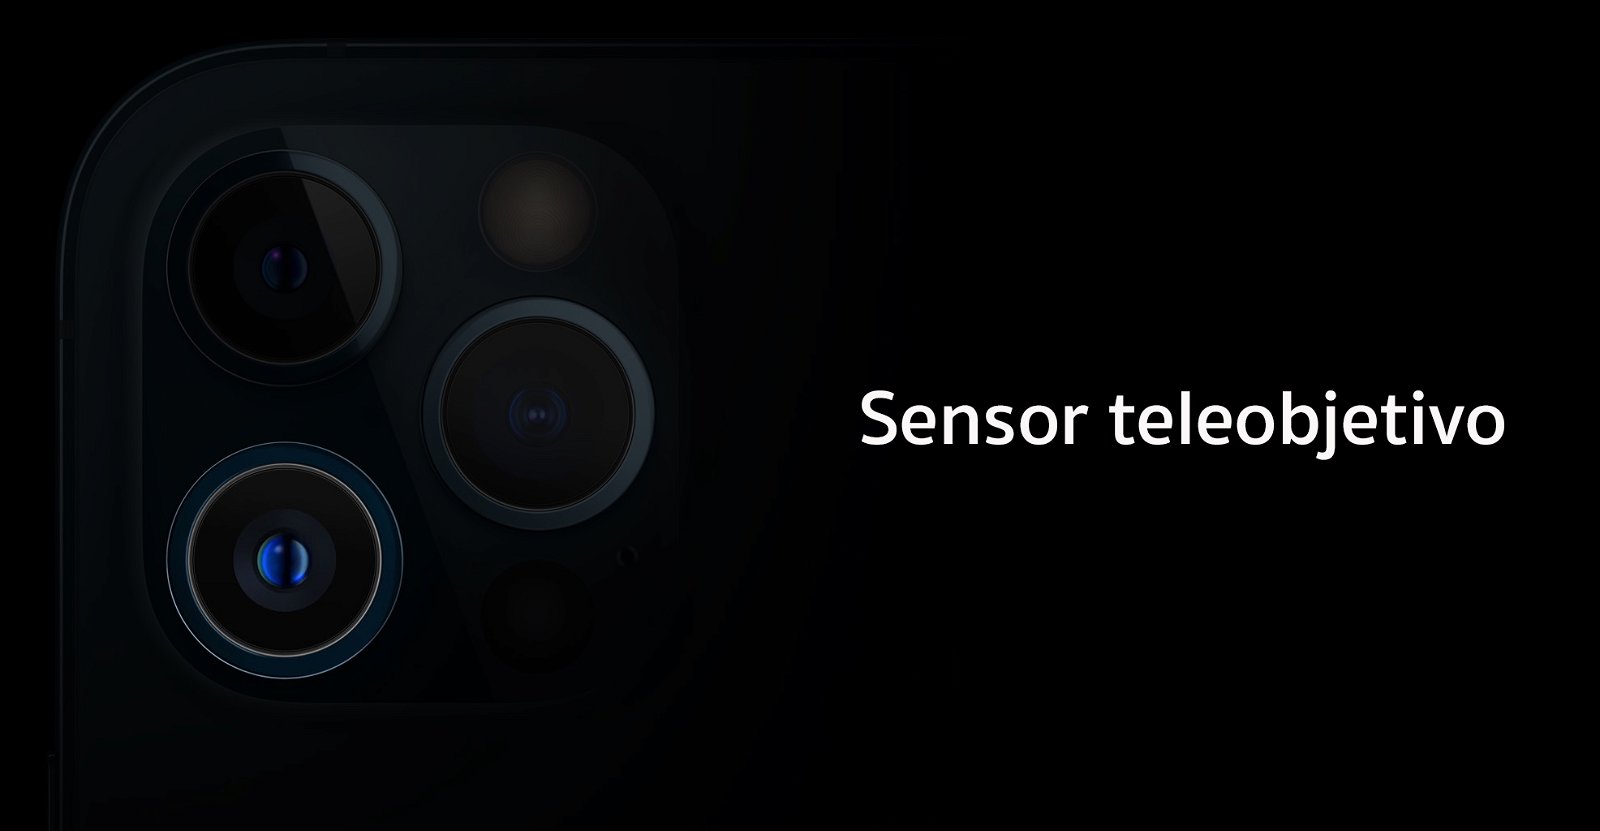 sensor teleobjetivo iPhone 12 Pro